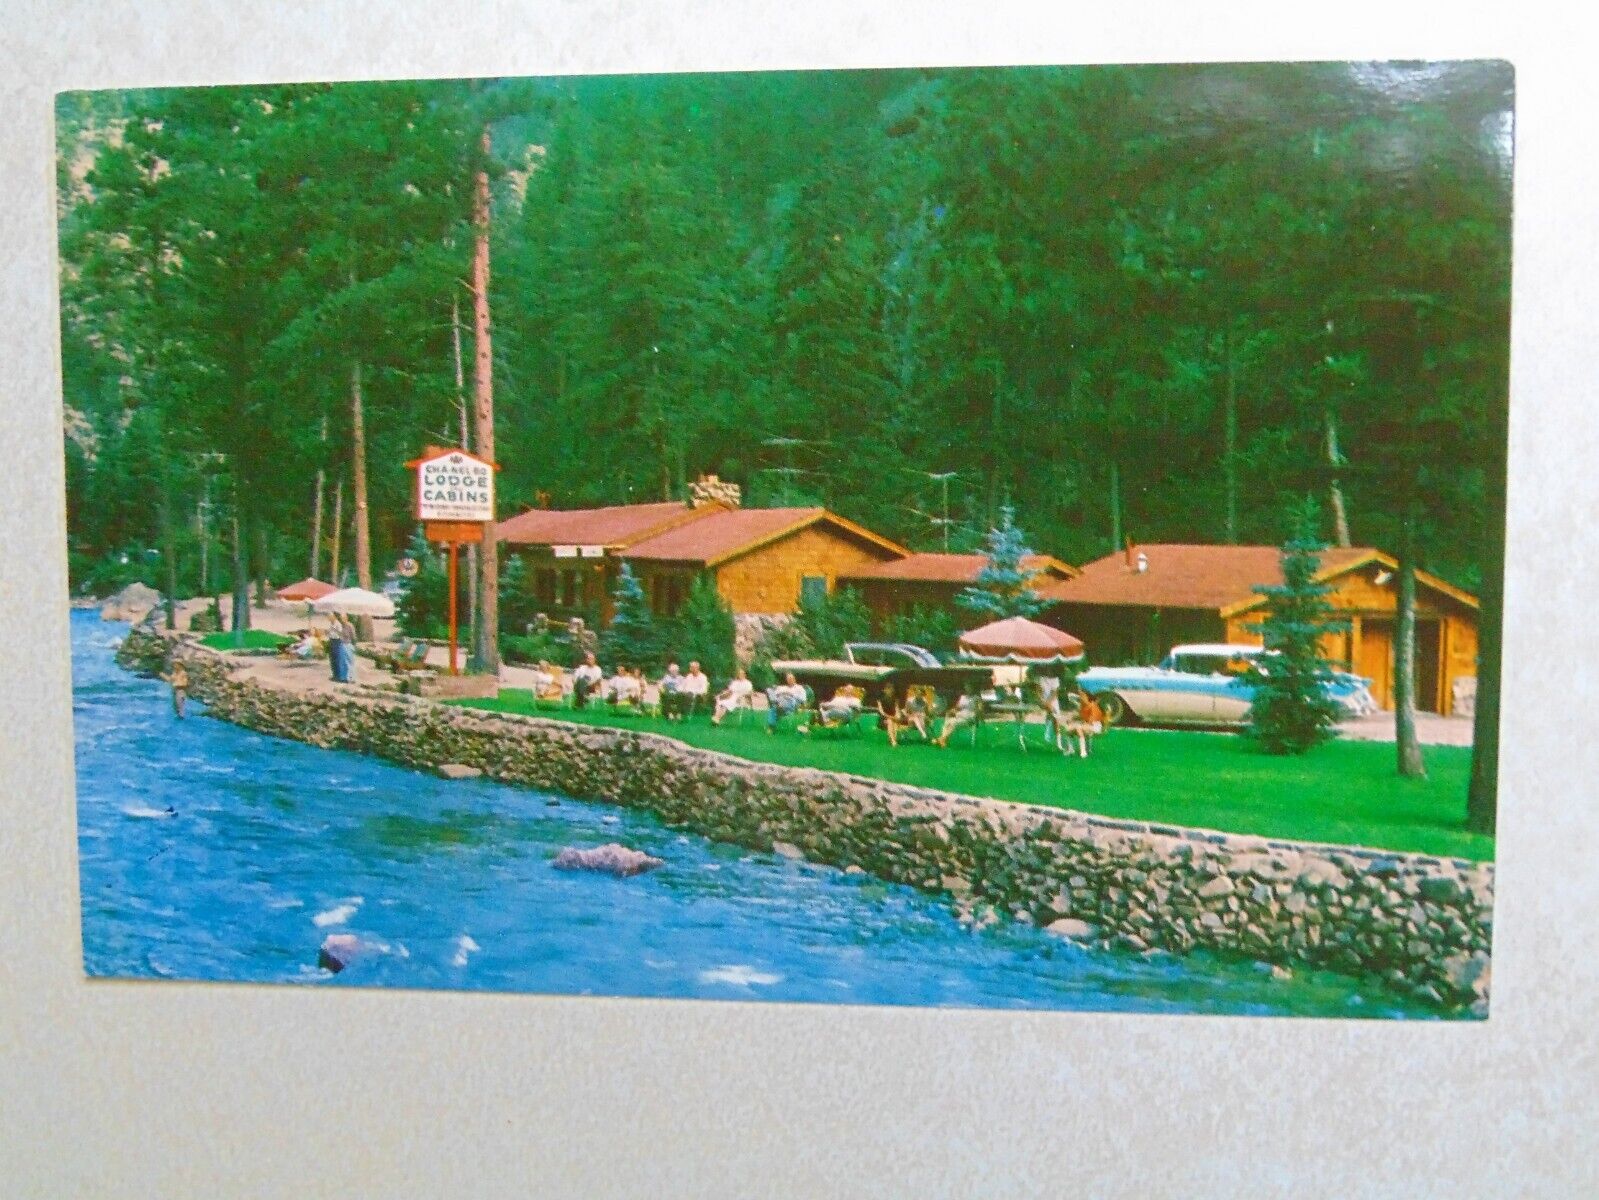 E2339 Postcard Cha-nel-bo lodge & cabins Drake CO Colorado